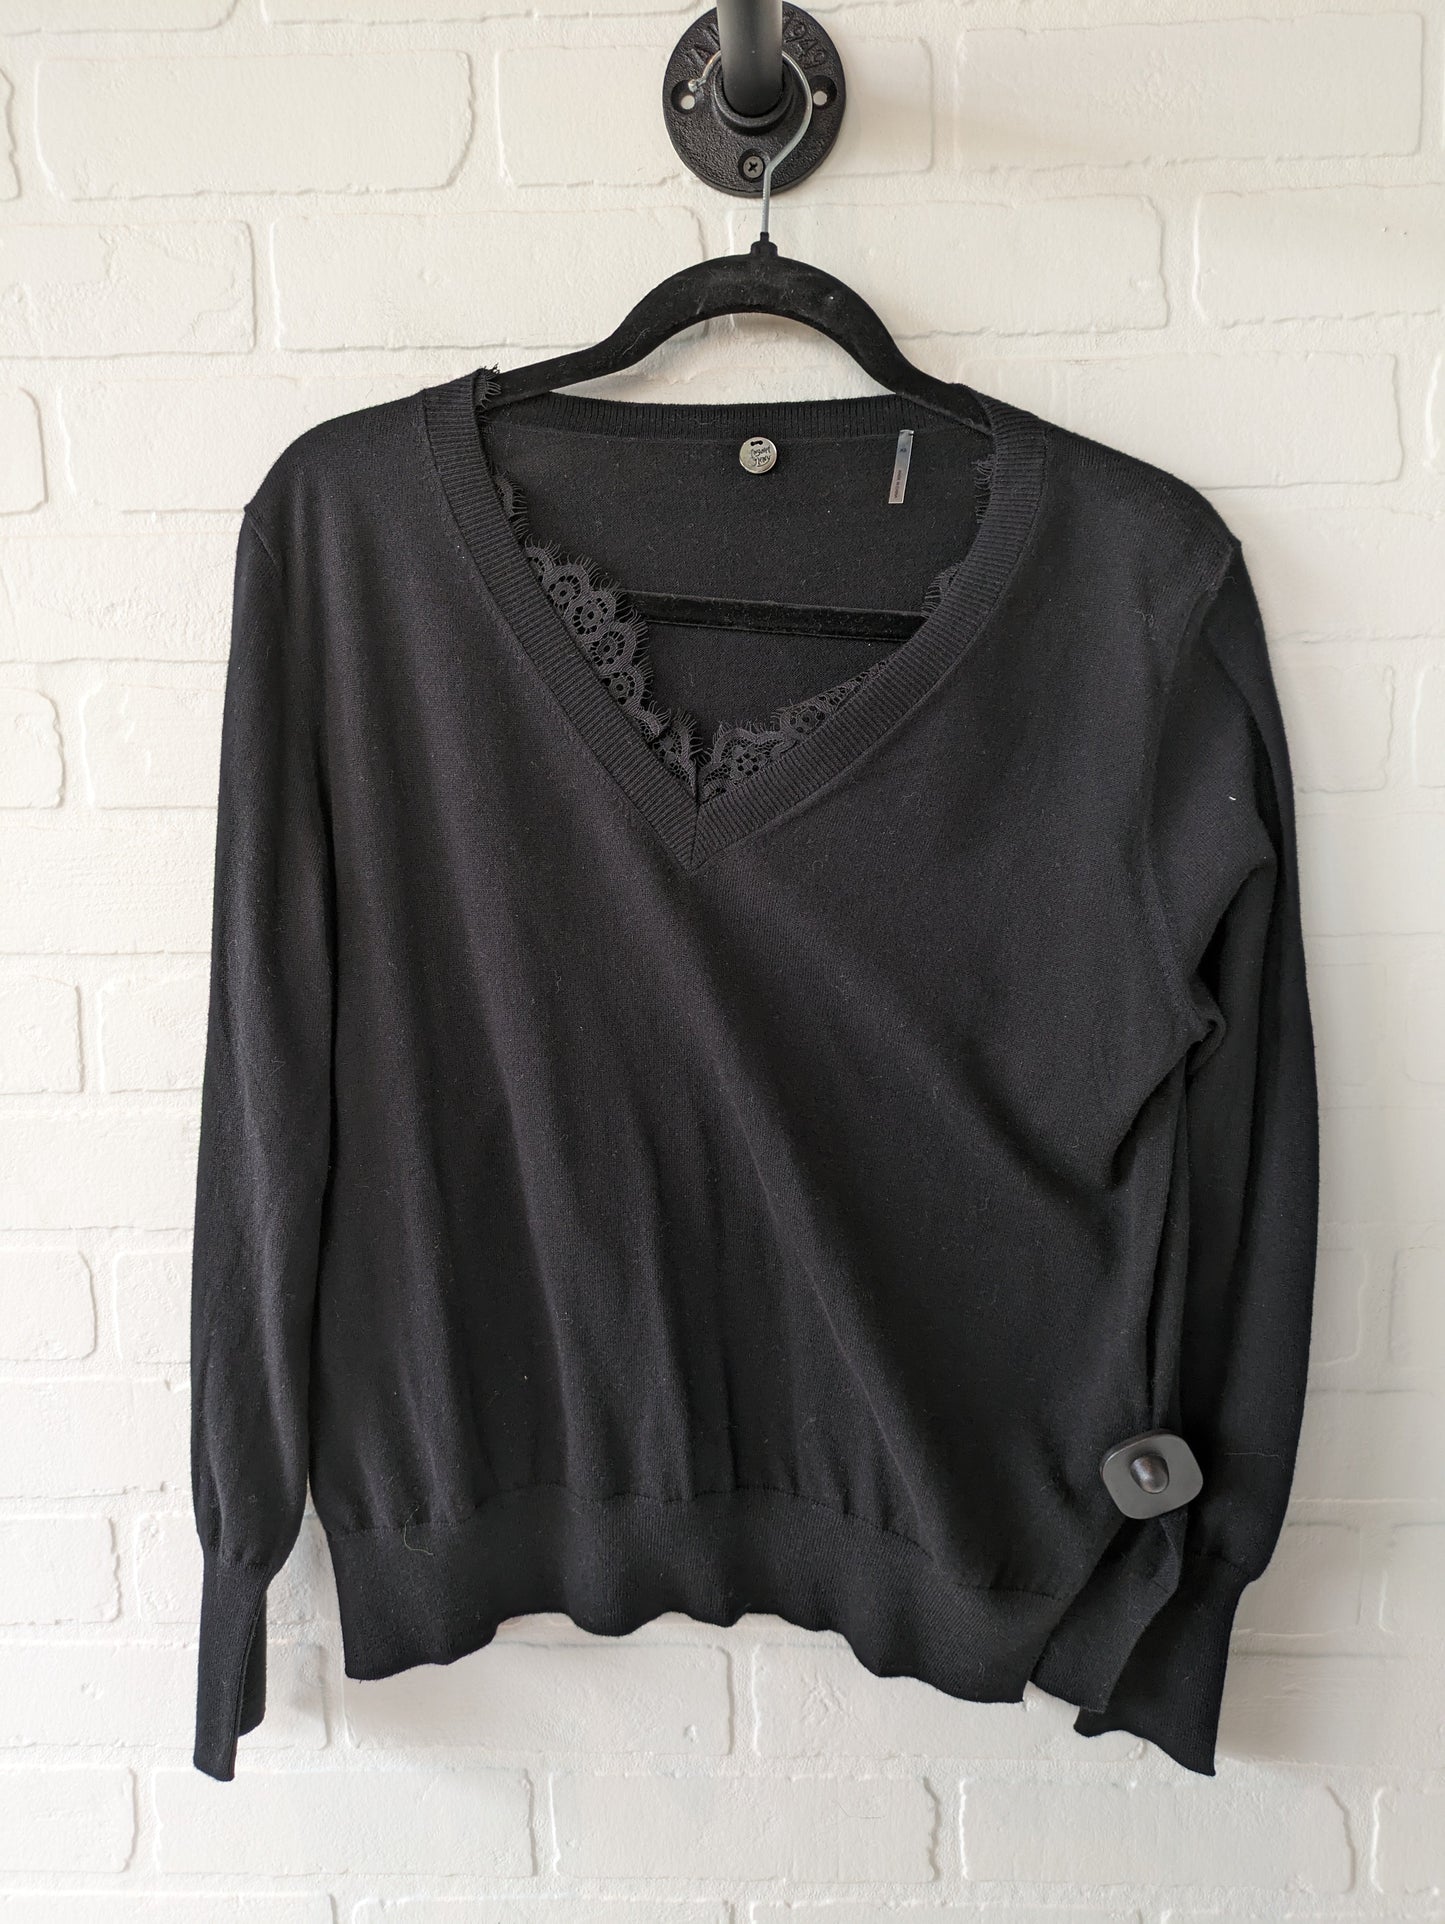 Sweater By Cma  Size: Xs